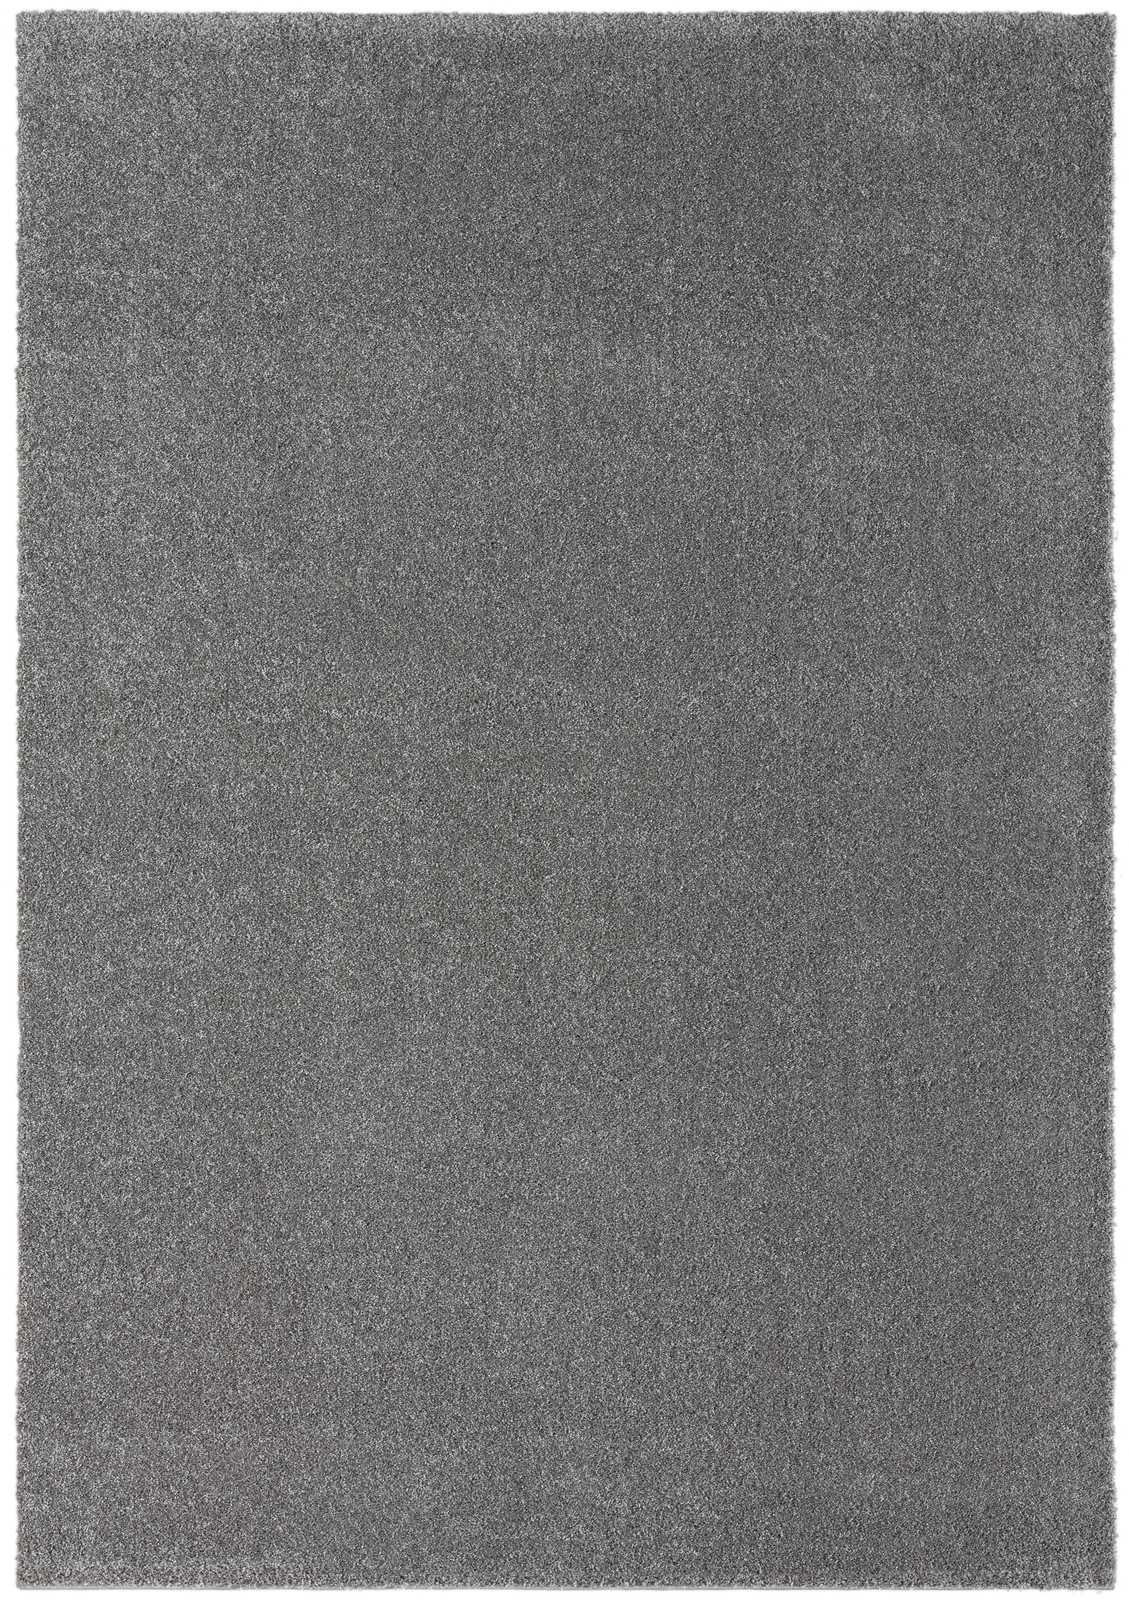             Pluizig kortpolig tapijt in grijs - 290 x 200 cm
        